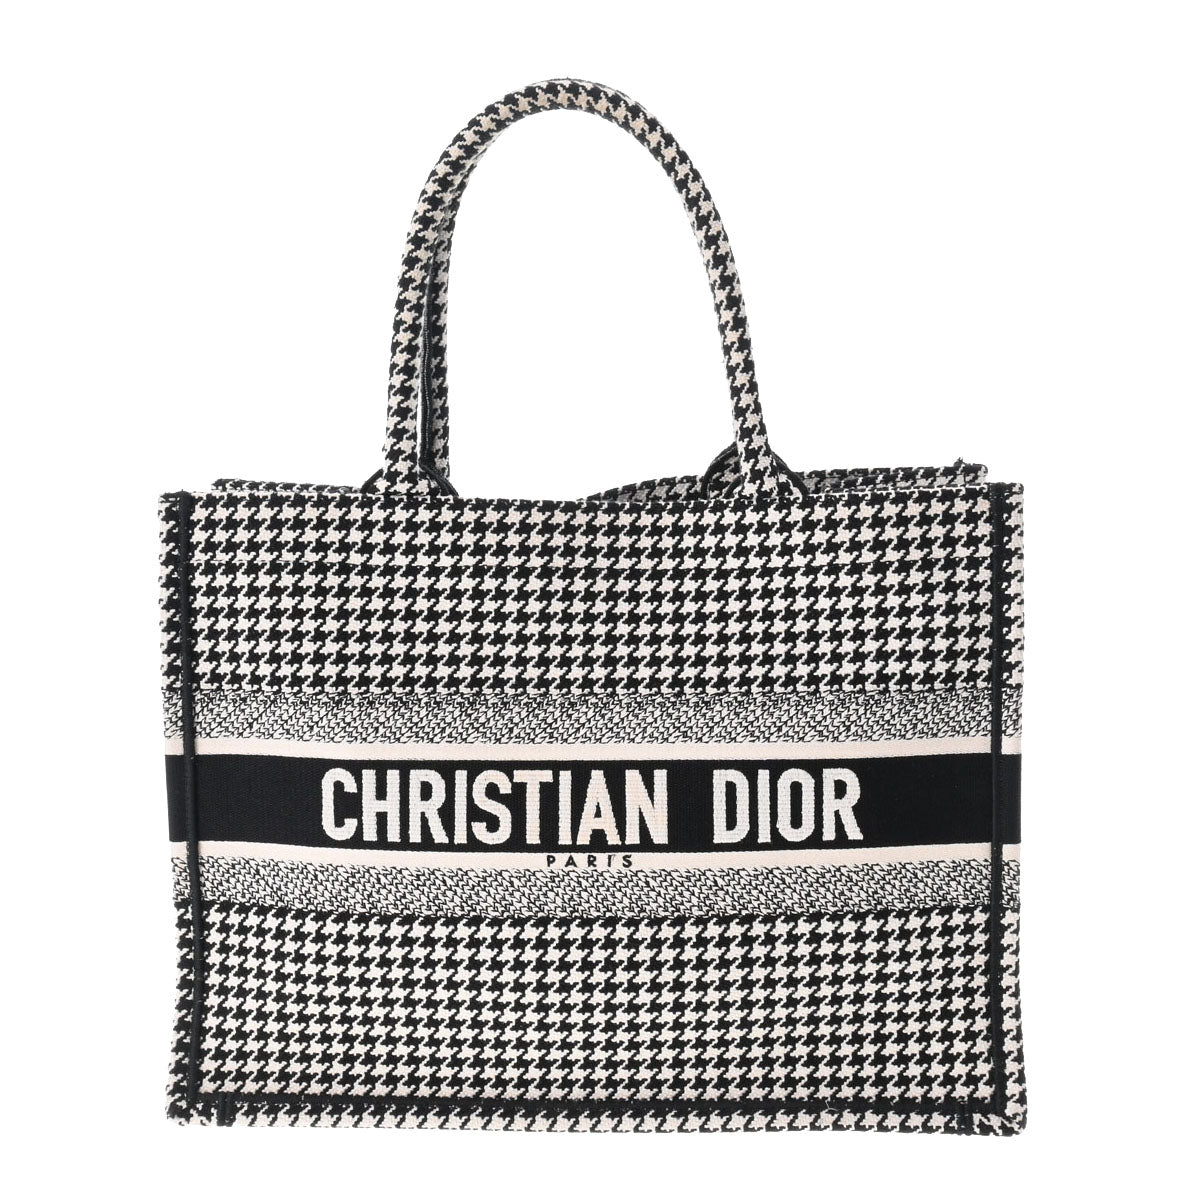 未使用 展示品 クリスチャン ディオール Christian Dior ブック トート バーティカル バッグ キャンバス ネイビー ホワイト VLP 90198428